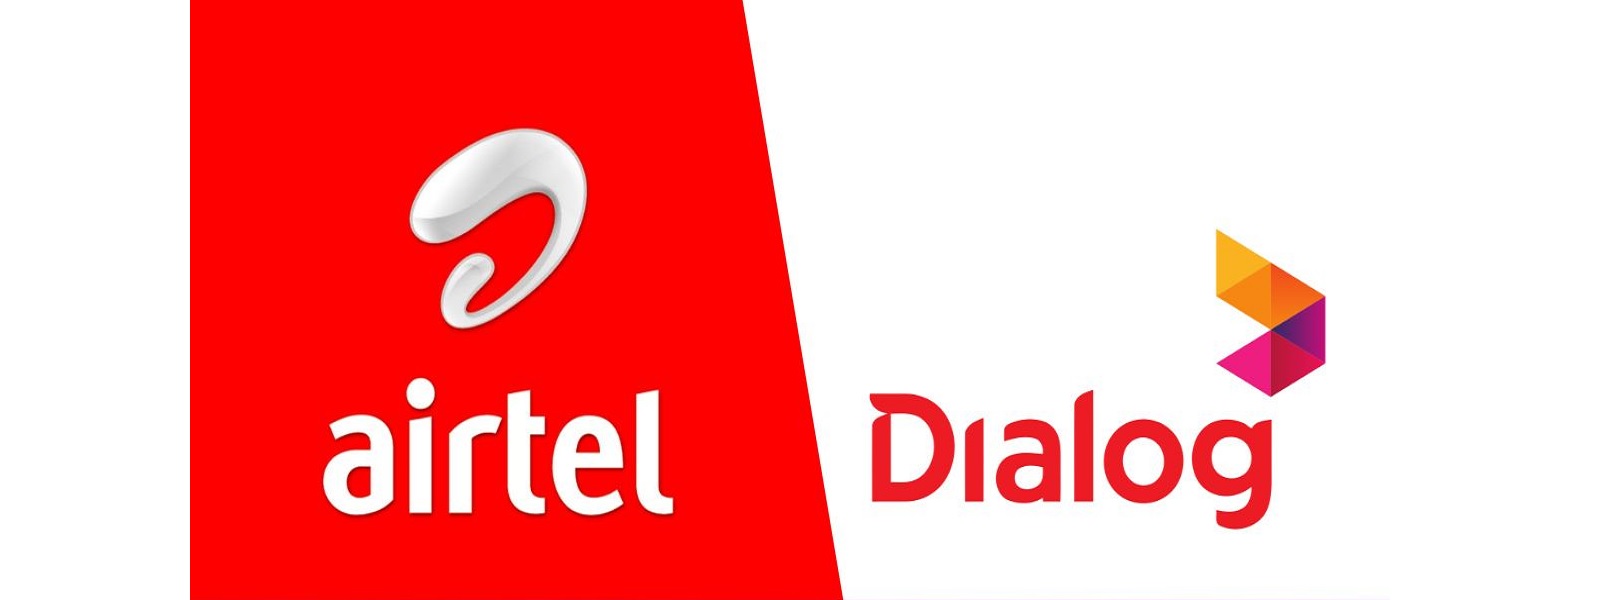 Dialog மற்றும் Airtel நிறுவனங்கள் ஒன்றிணைவு